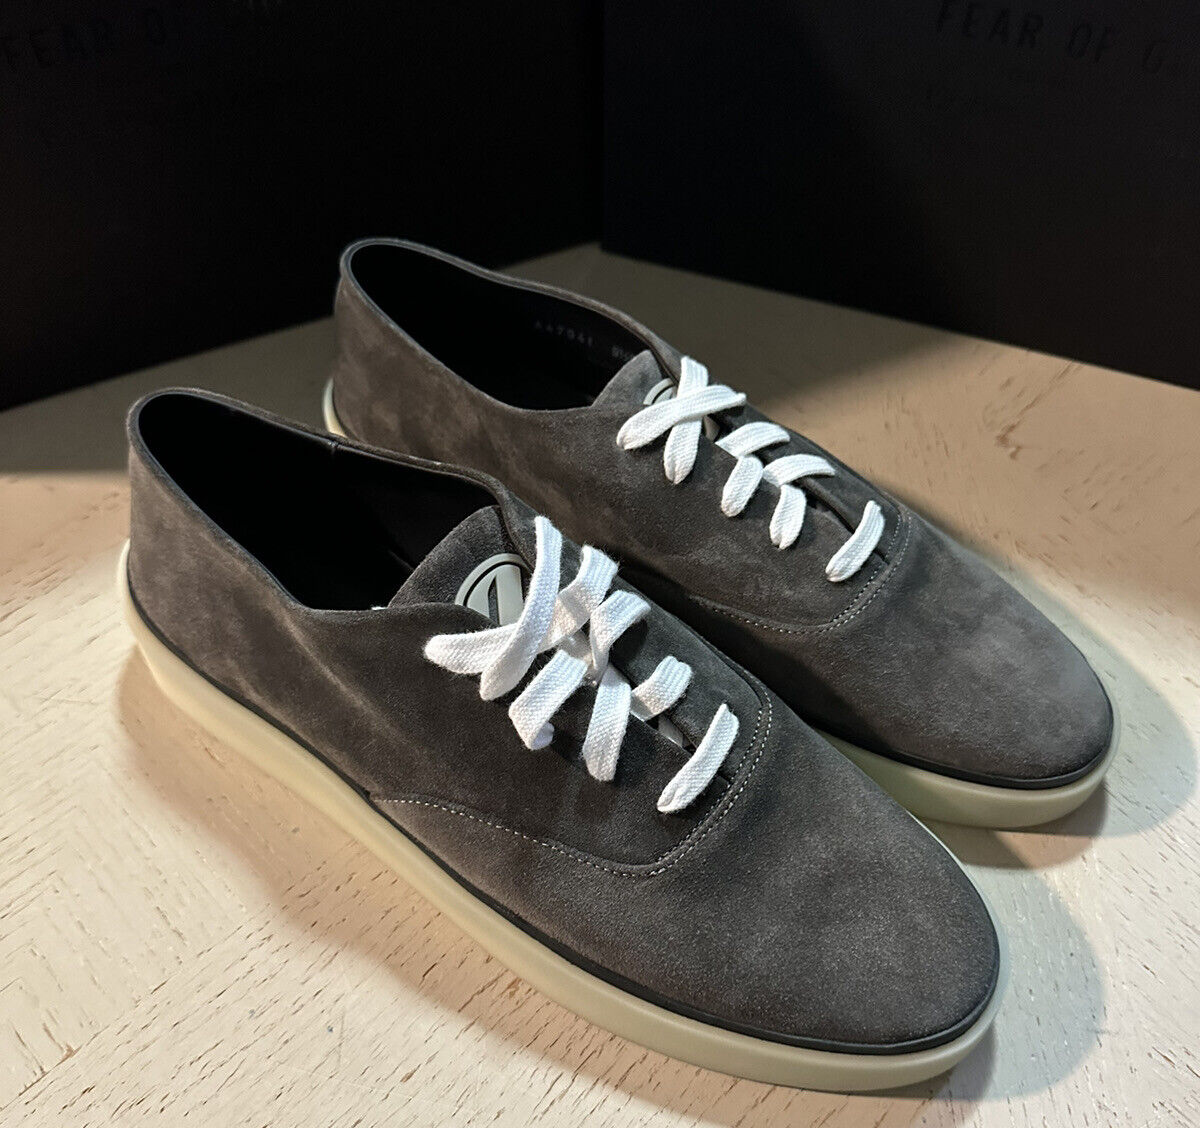 Neu $ 595 Ermenegildo Zegna Wildleder/Leder Sneakers Schuhe DK Grau 14 US